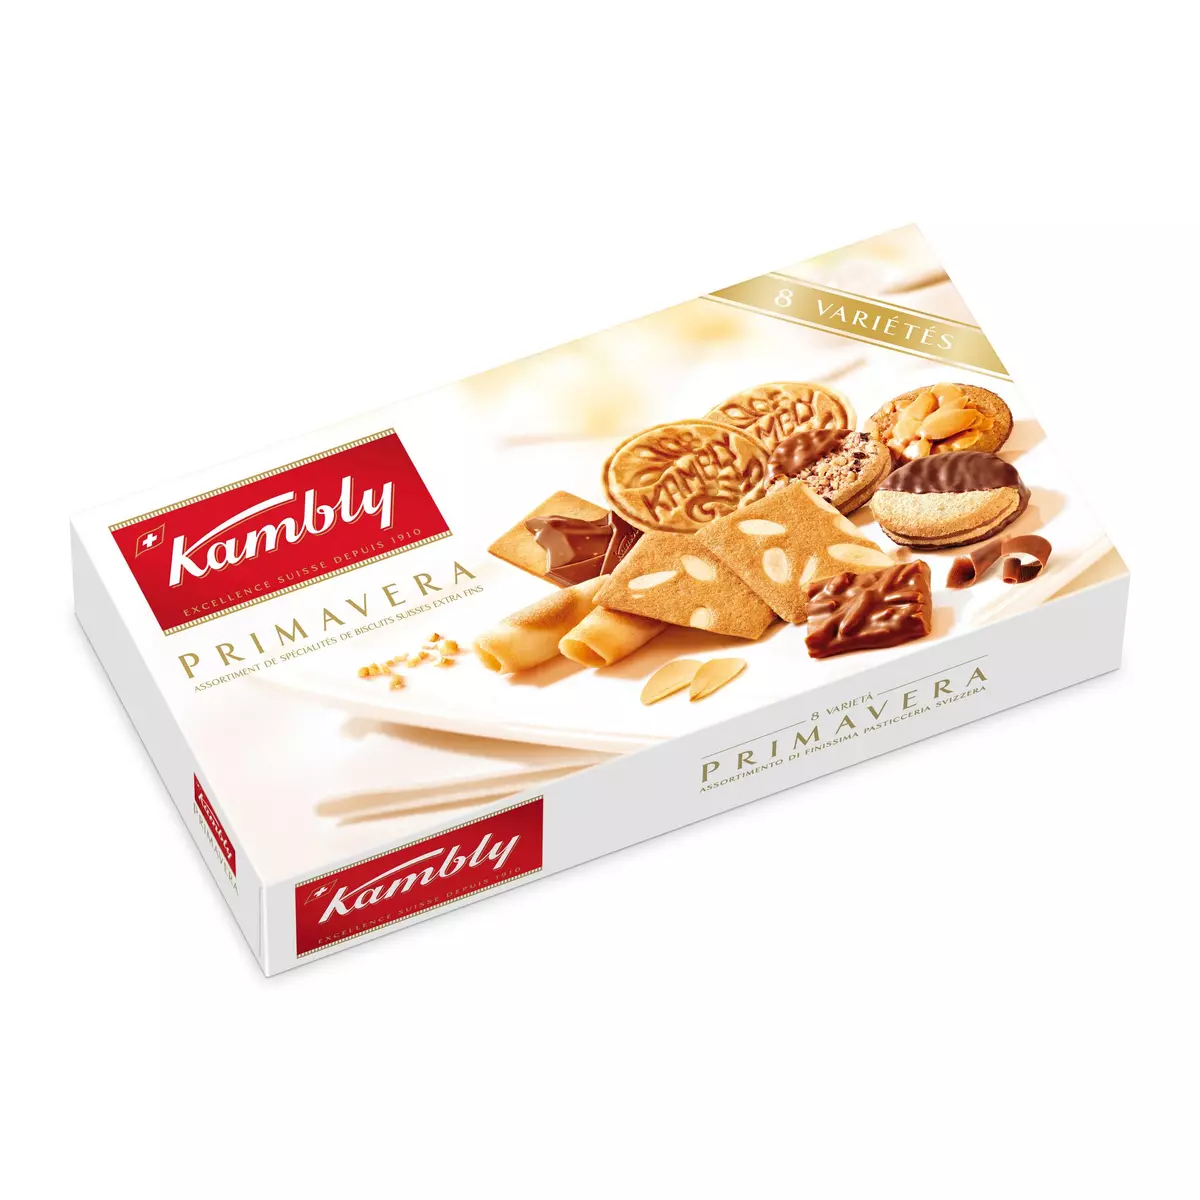 KAMBLY Primavera Assortiment de spécialités de biscuits suisses extra fins 175g